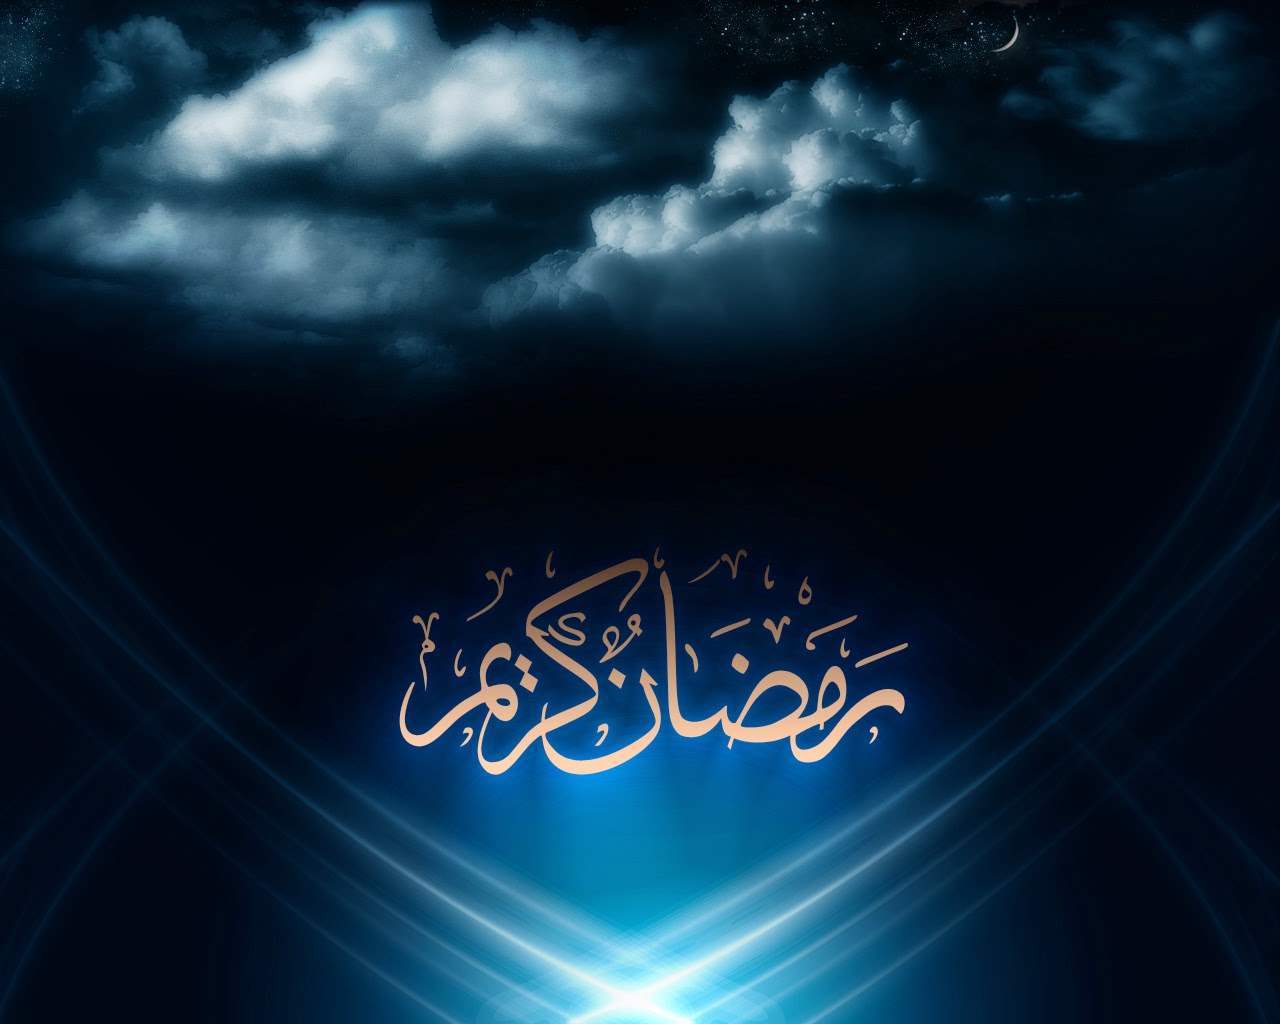 colección de imágenes y fondos de pantalla de ramadán,azul,cielo,nube,texto,fuente